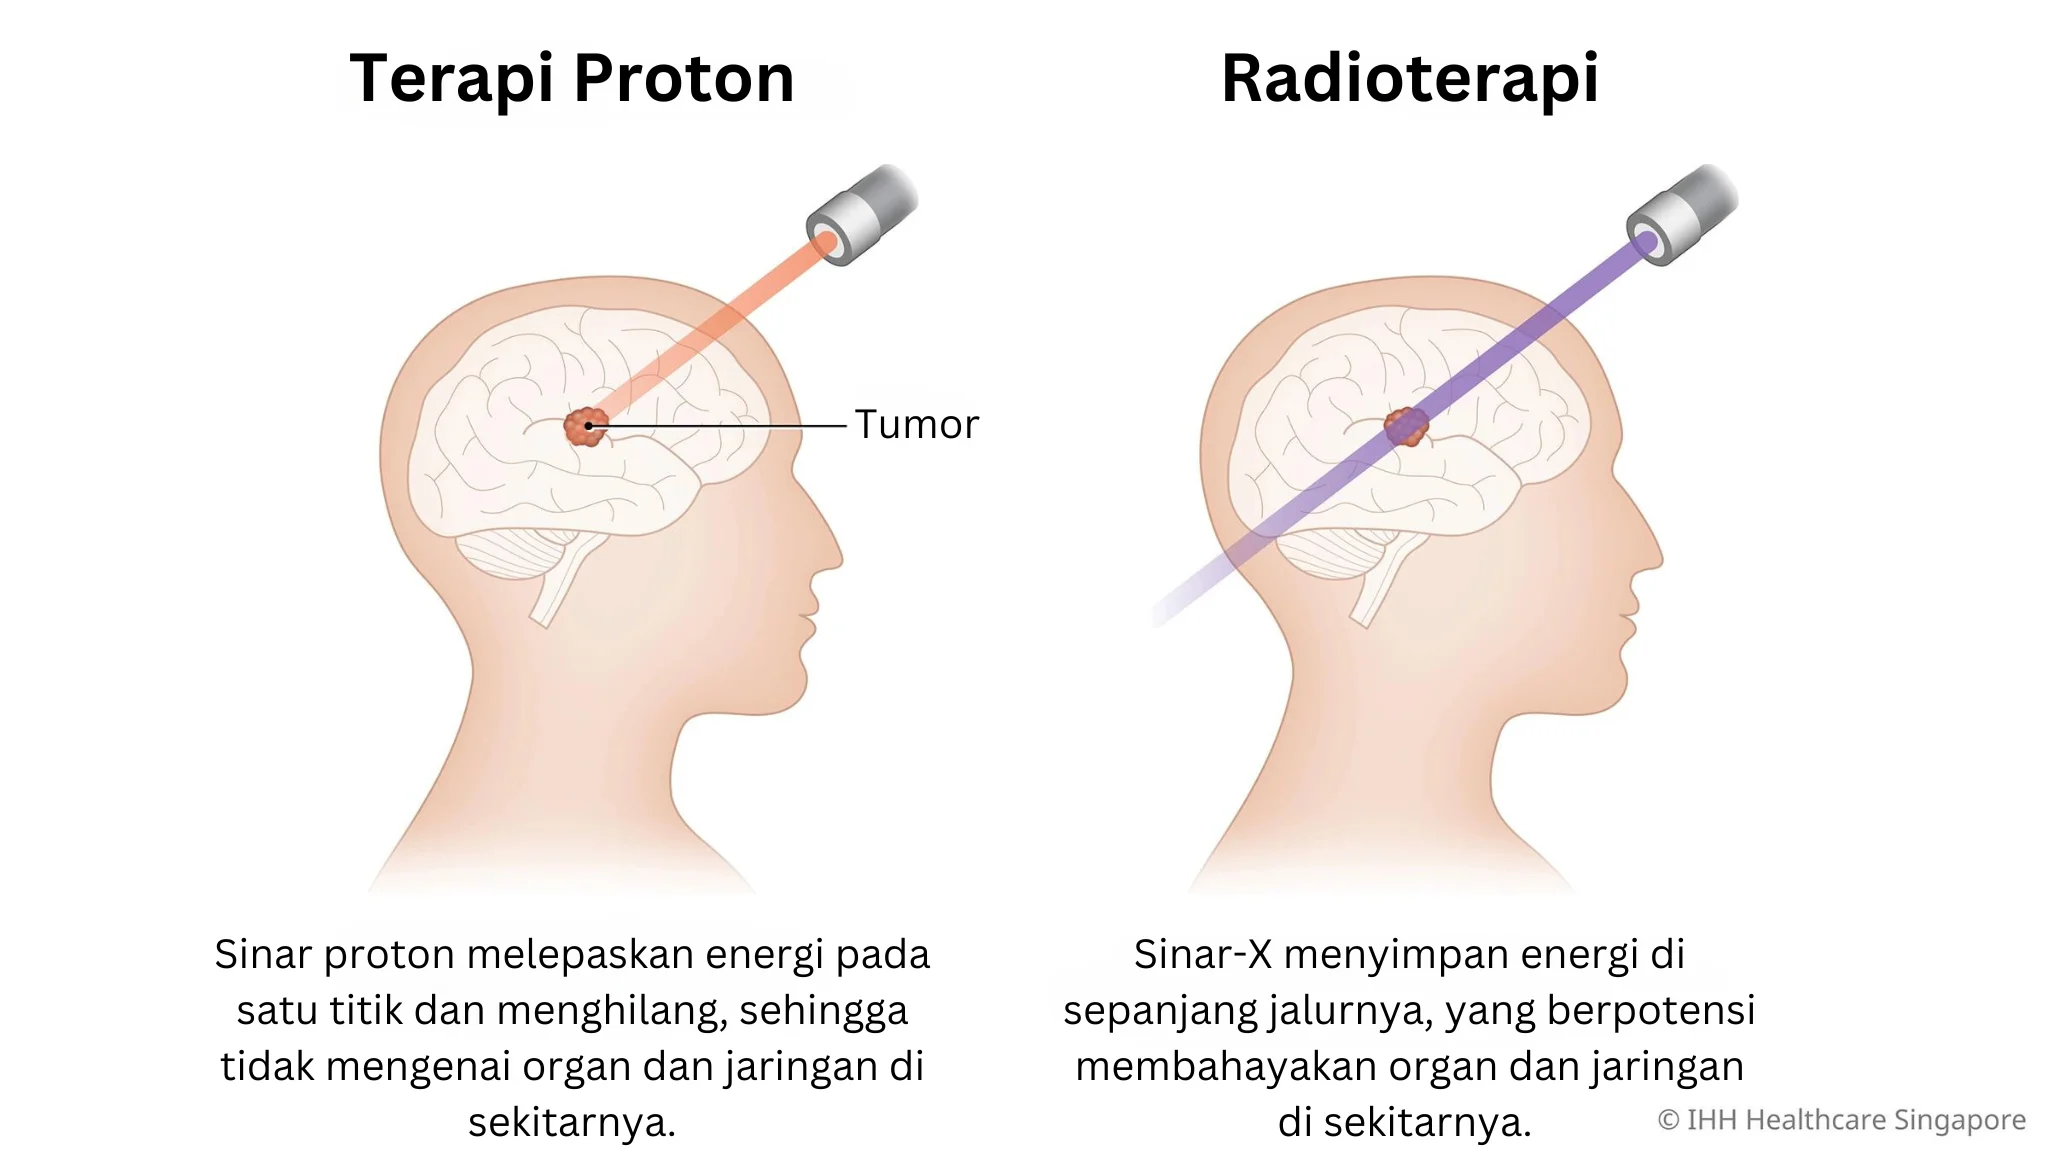 Terapi Sinar Proton vs Radioterapi